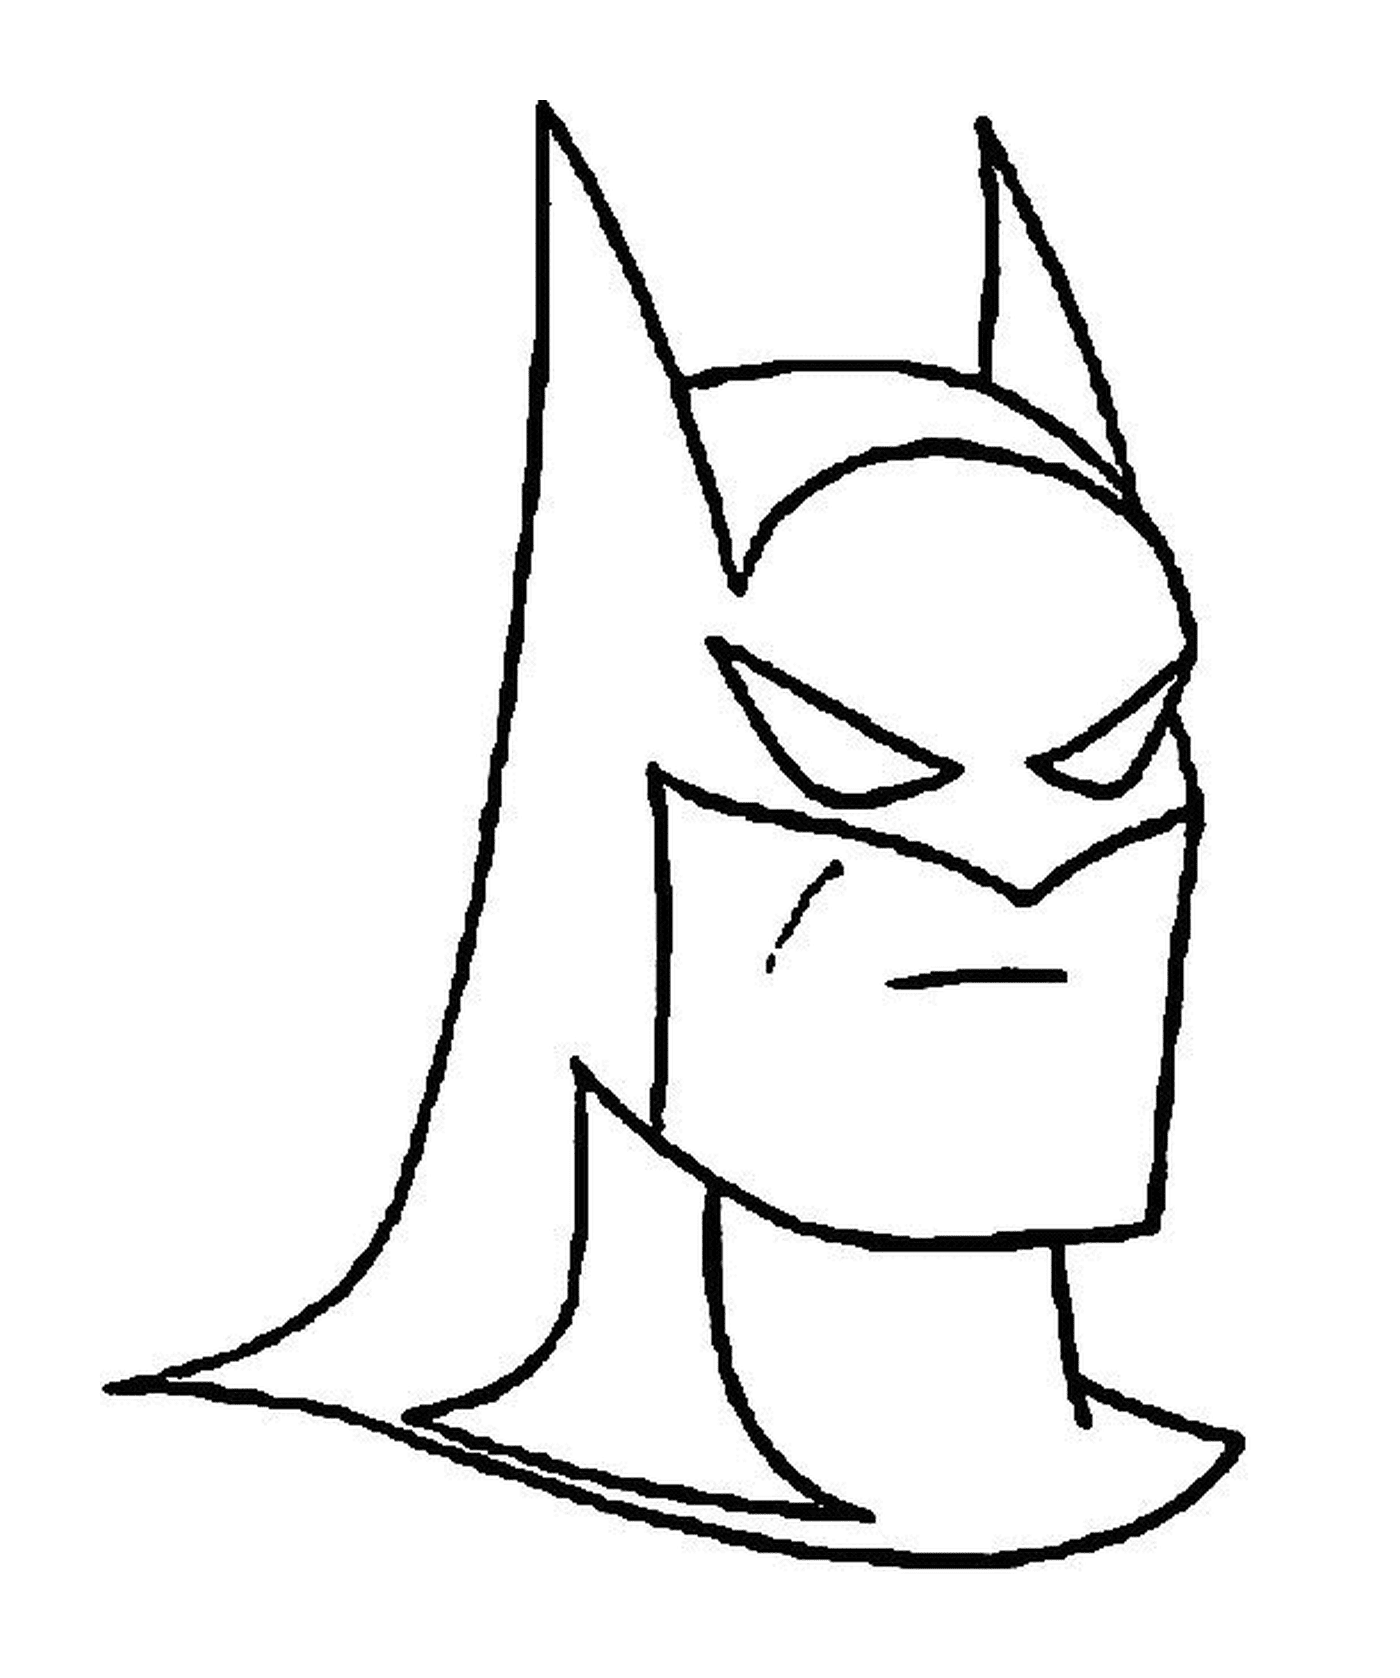  戴披斗篷的蝙蝠侠面具 